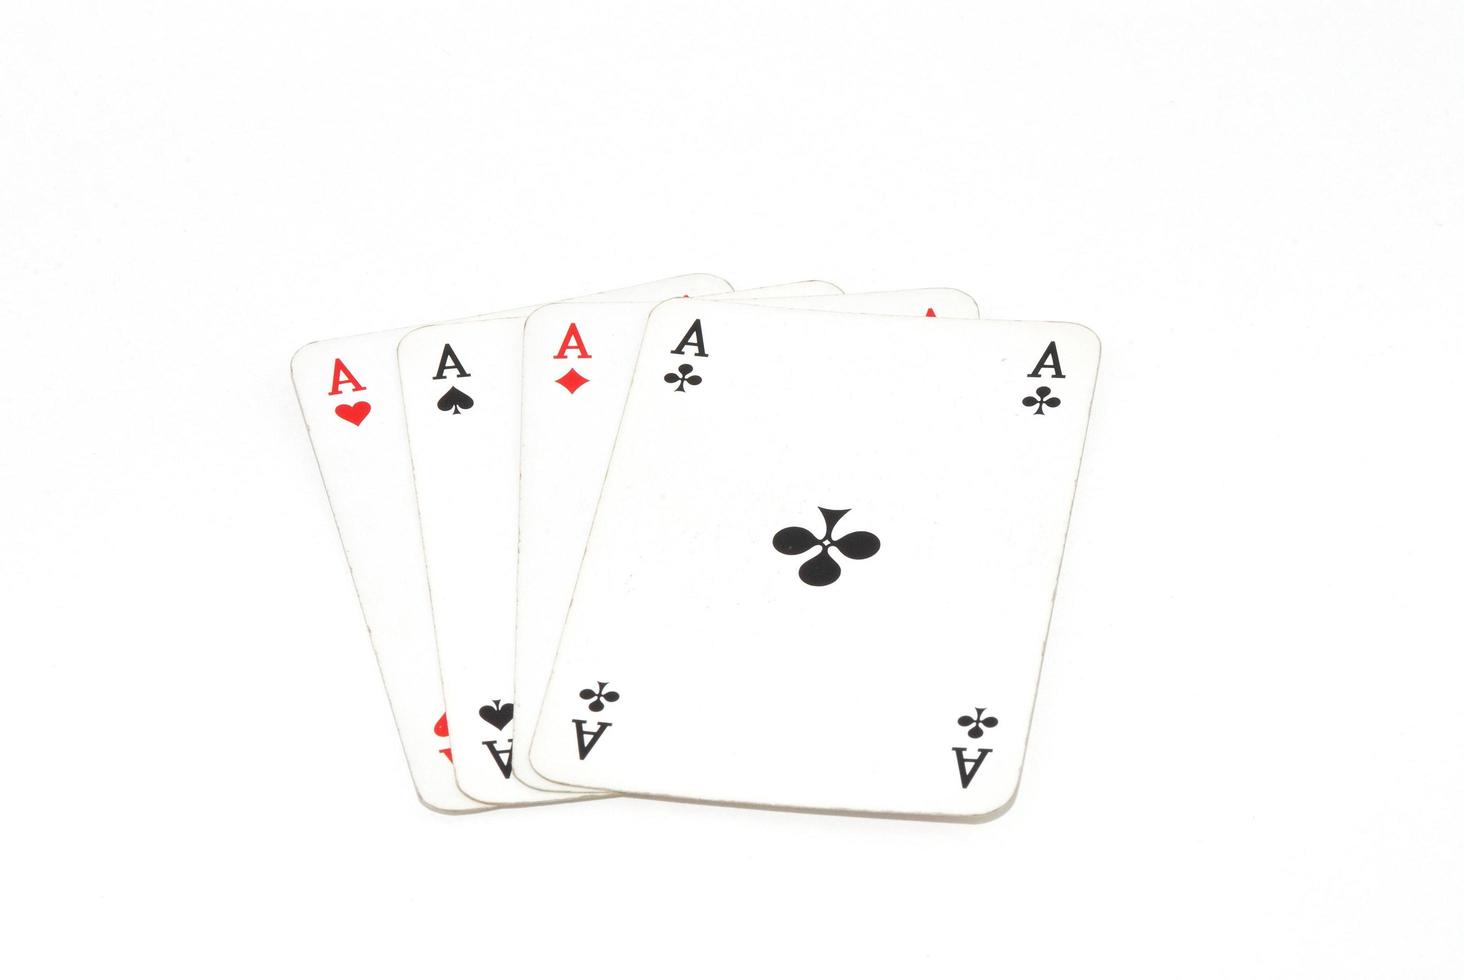 jogando cartas quatro ás do baralho vista completa no fundo branco foto